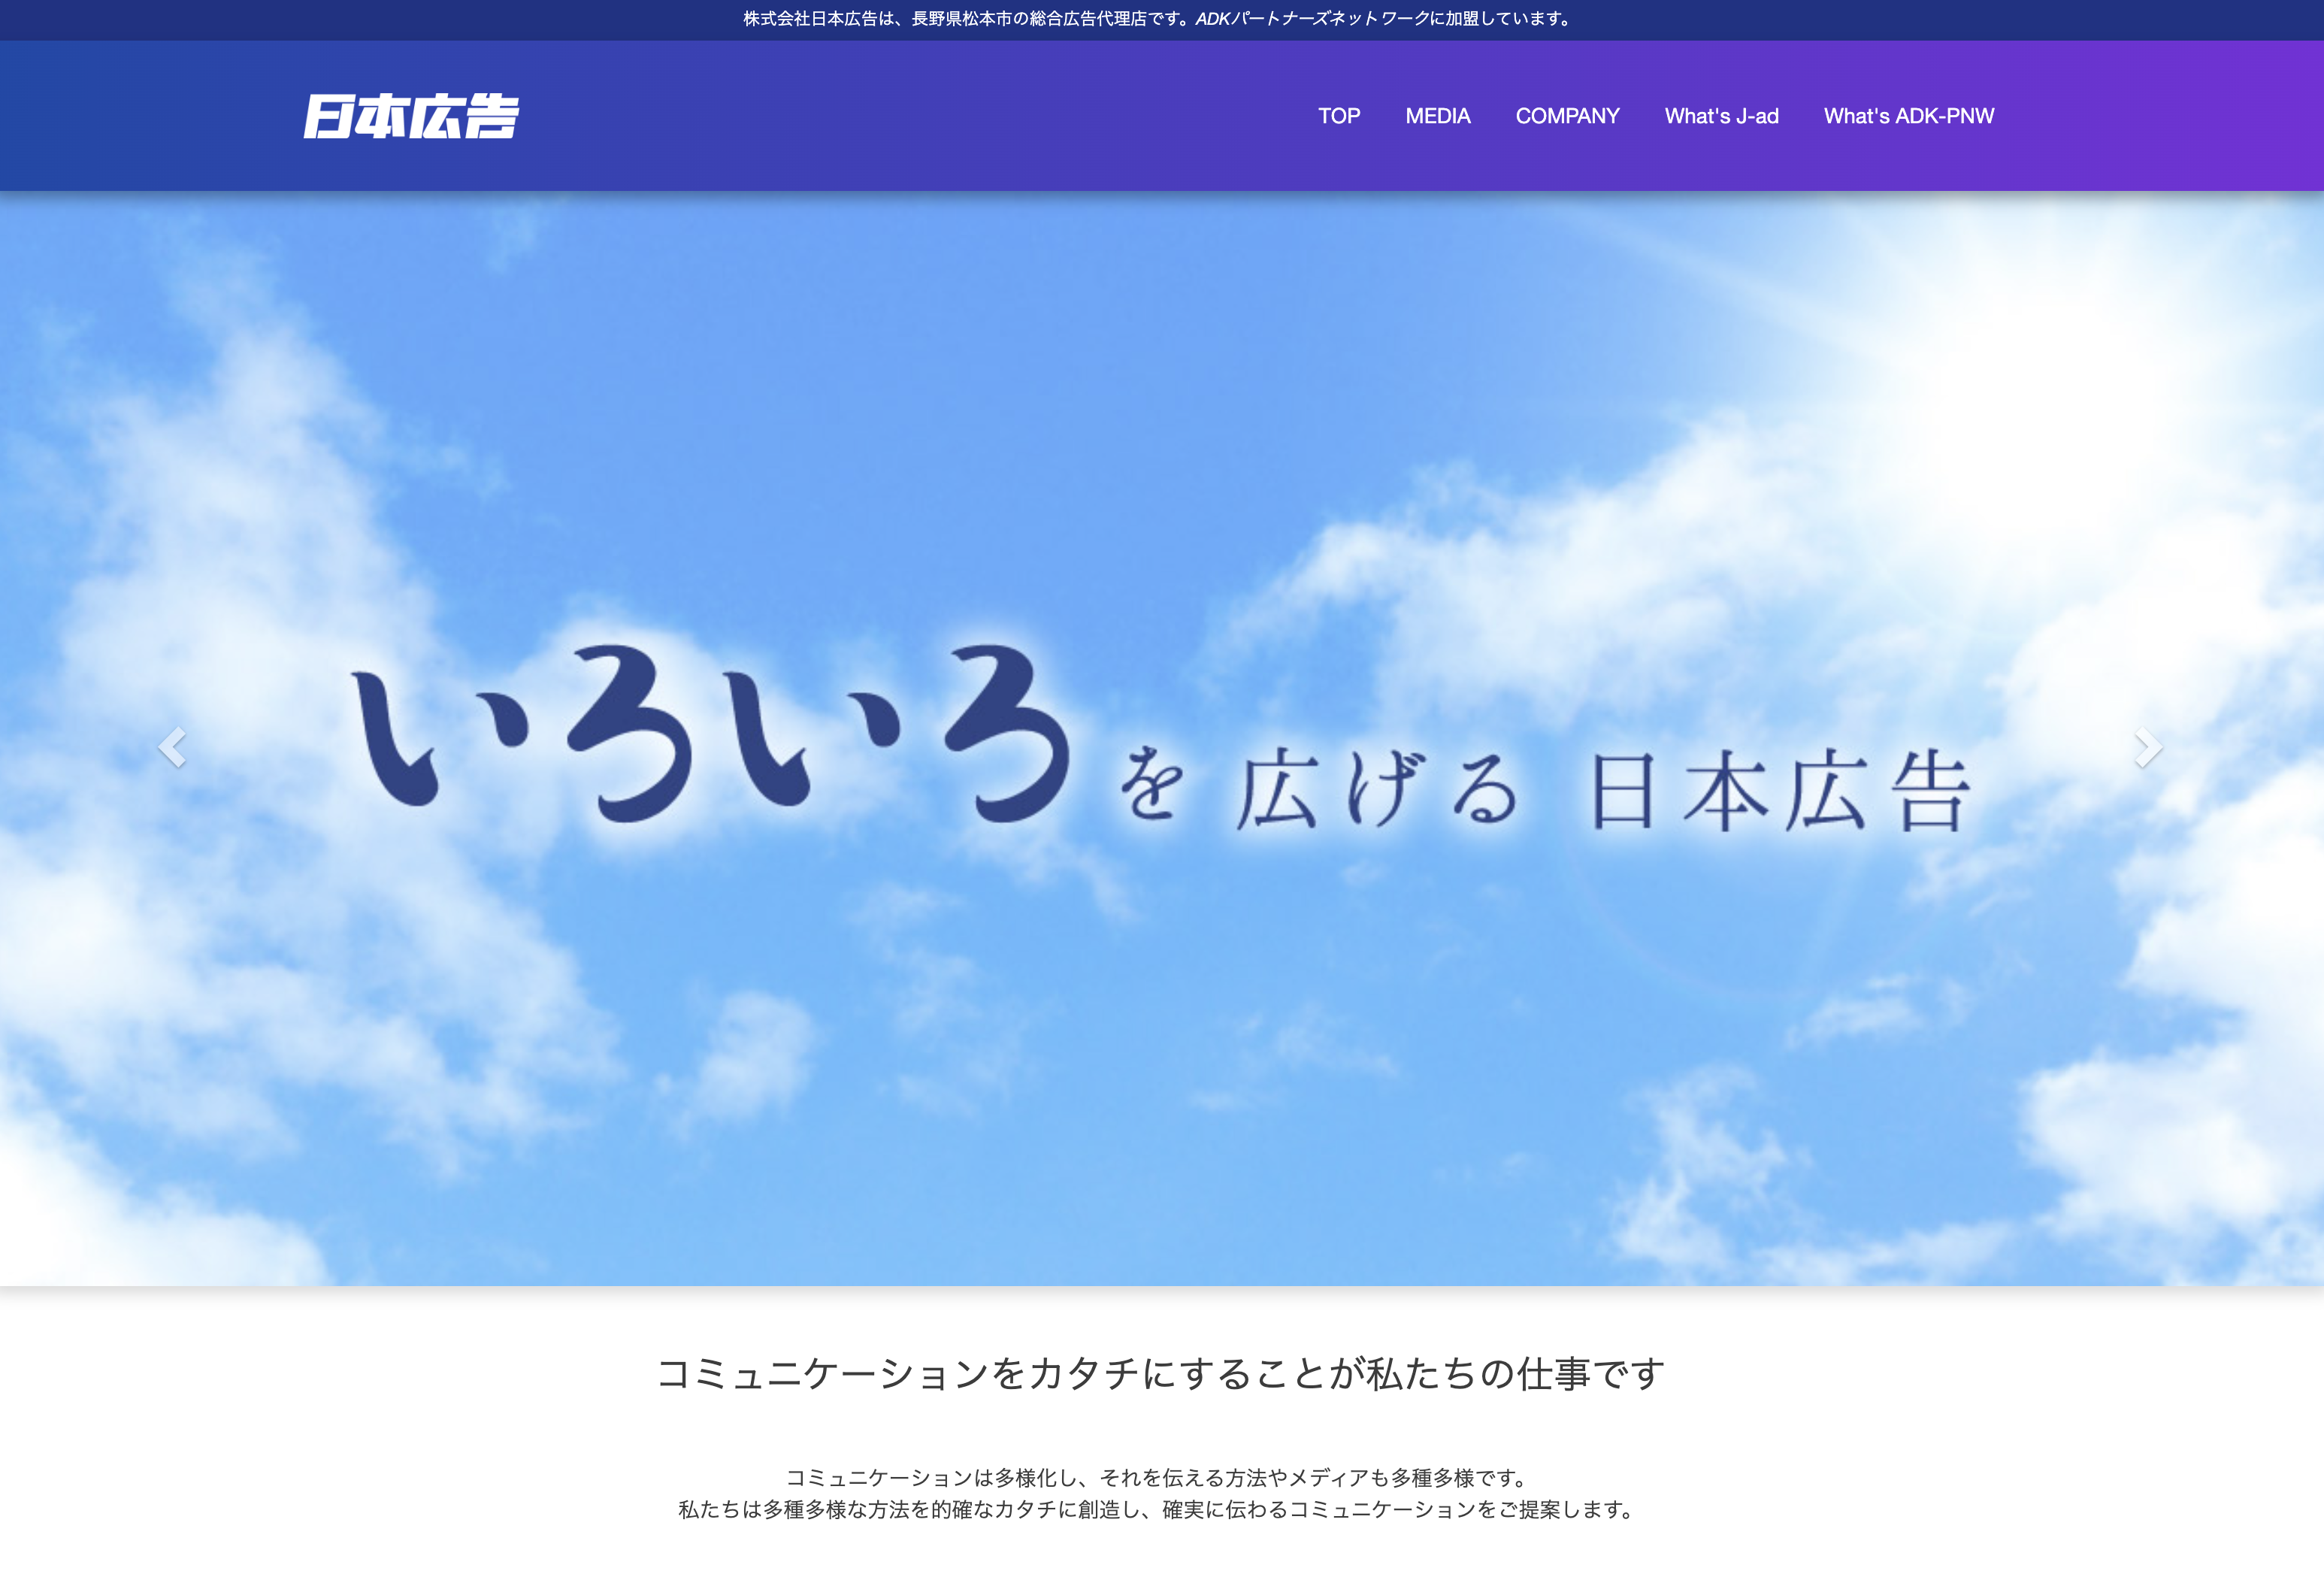 株式会社日本広告の株式会社日本広告:商品撮影サービス